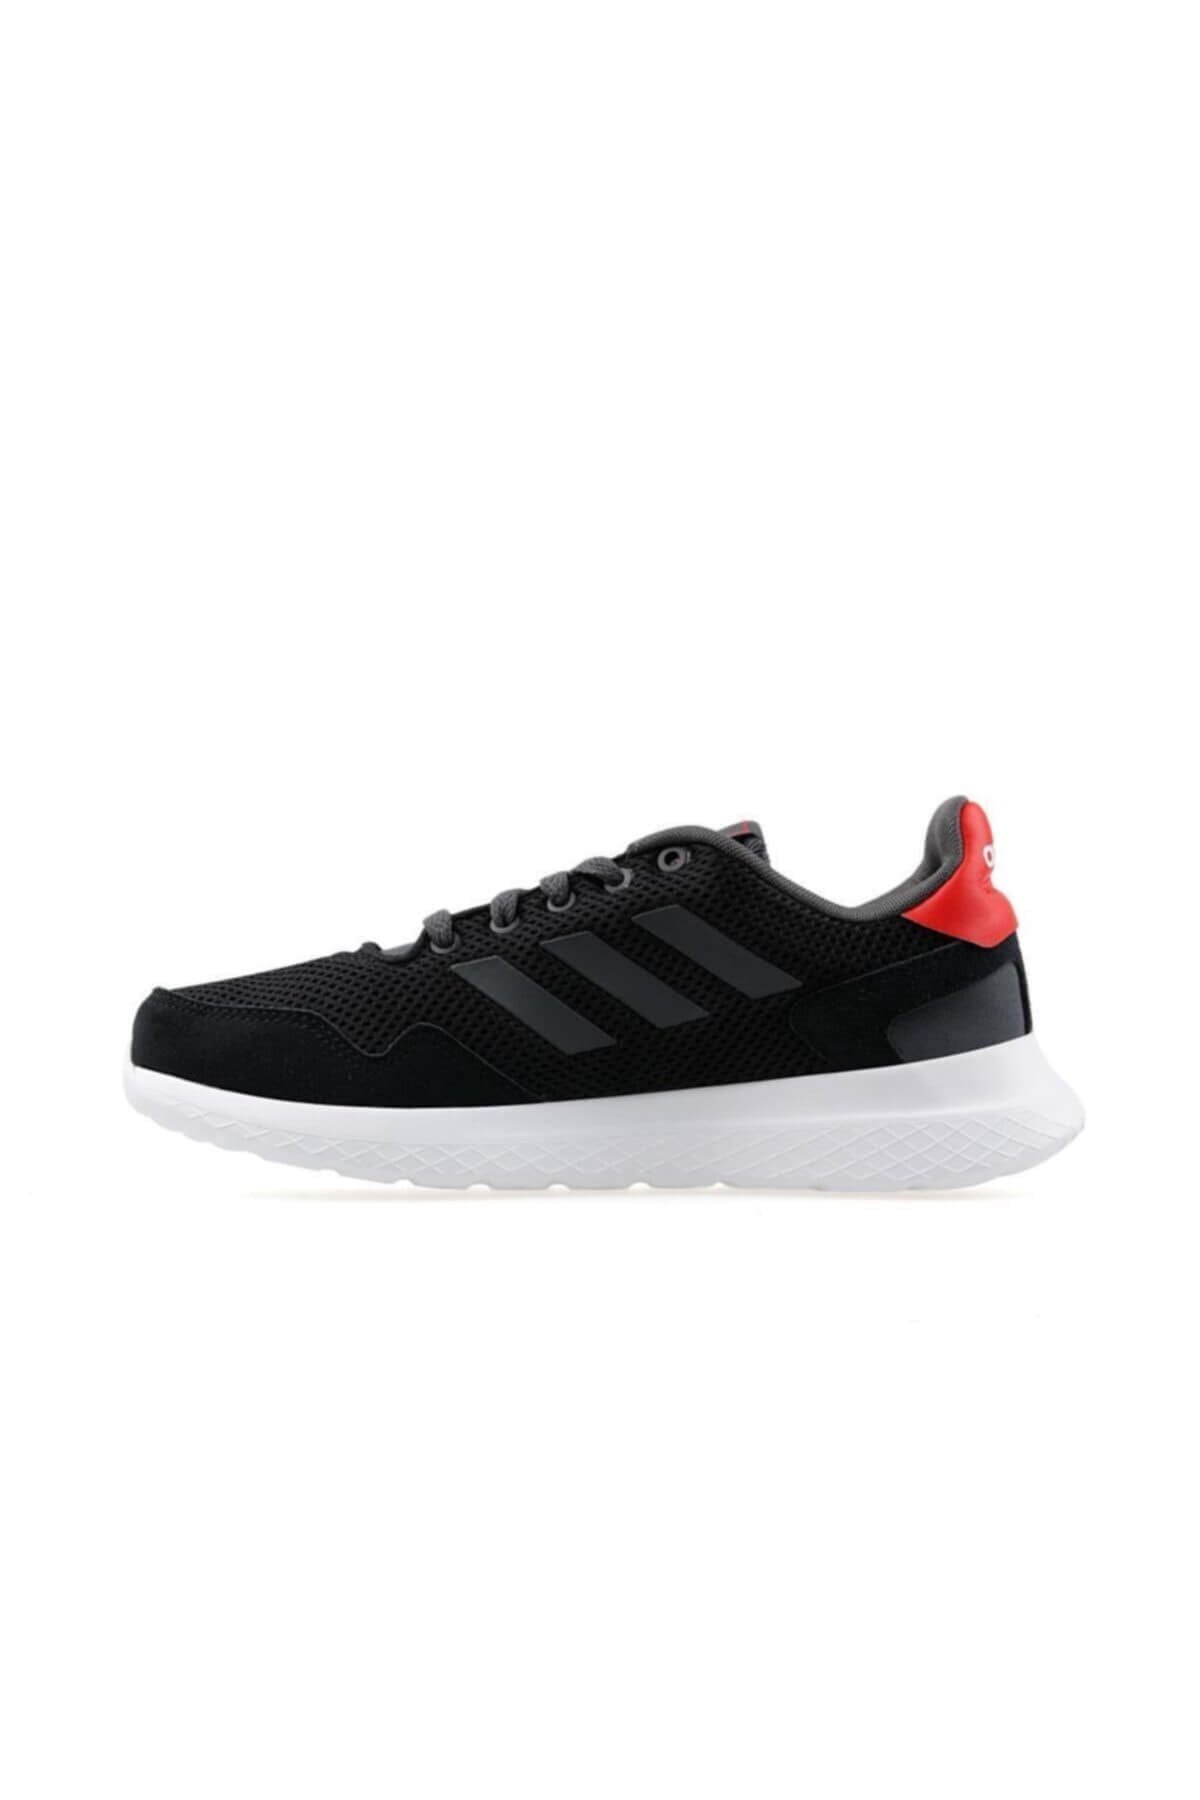 Adidas Archıvo Erkek Yürüyüş Koşu Ayakkabı EF0436-Siyah | sahilspor.com